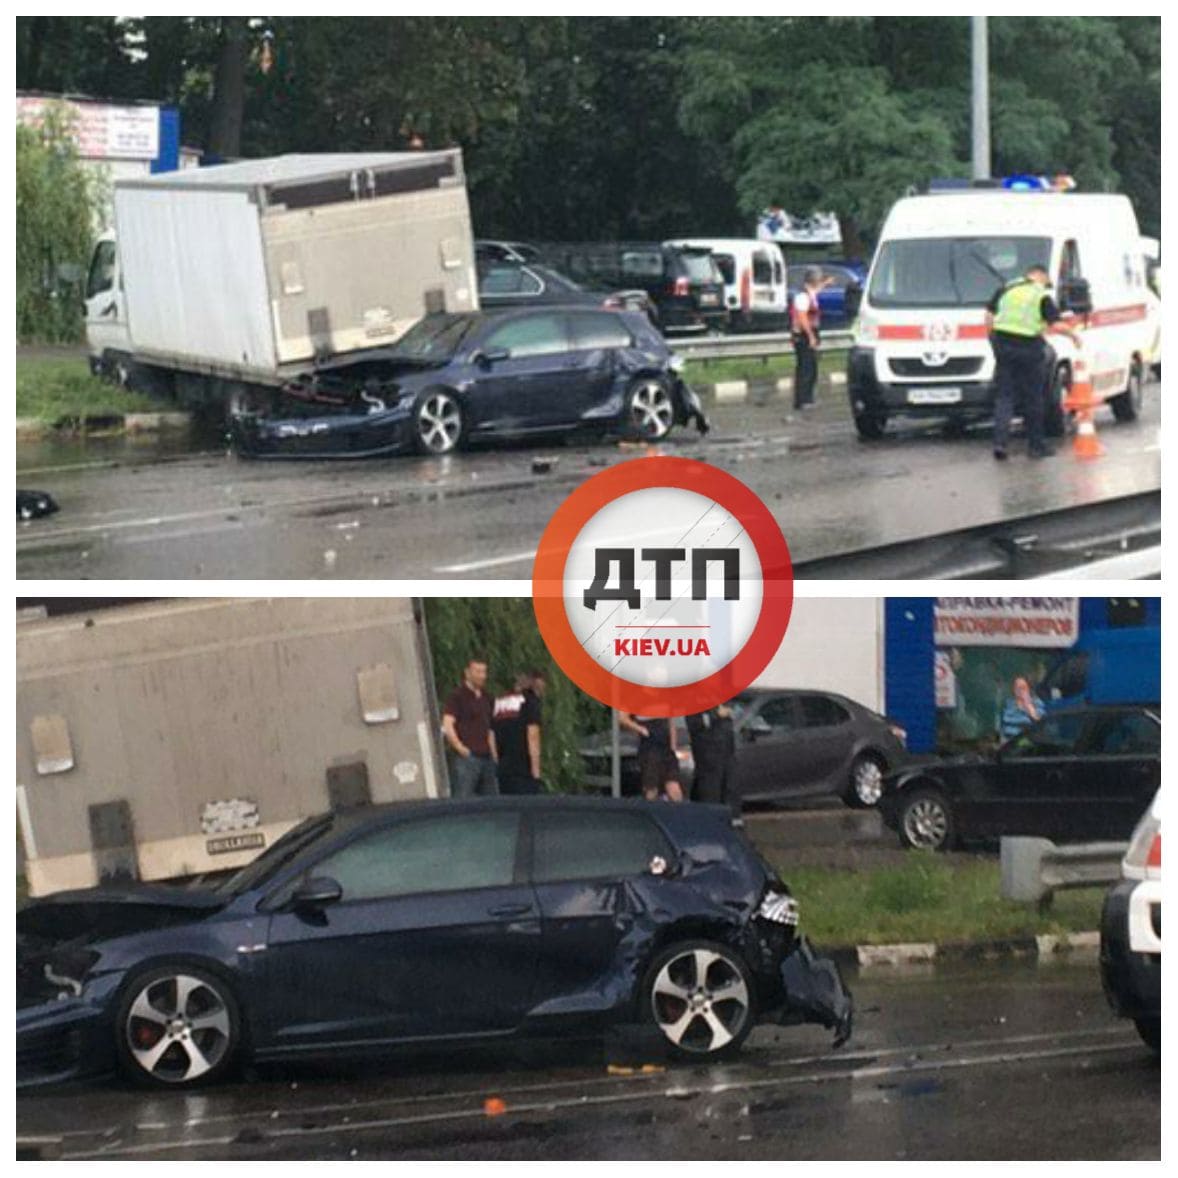 В Киеве на Житомирской трассе произошло серьезное ДТП с пострадавшими - легковой автомобиль задел фуру и опрокинул грузовик